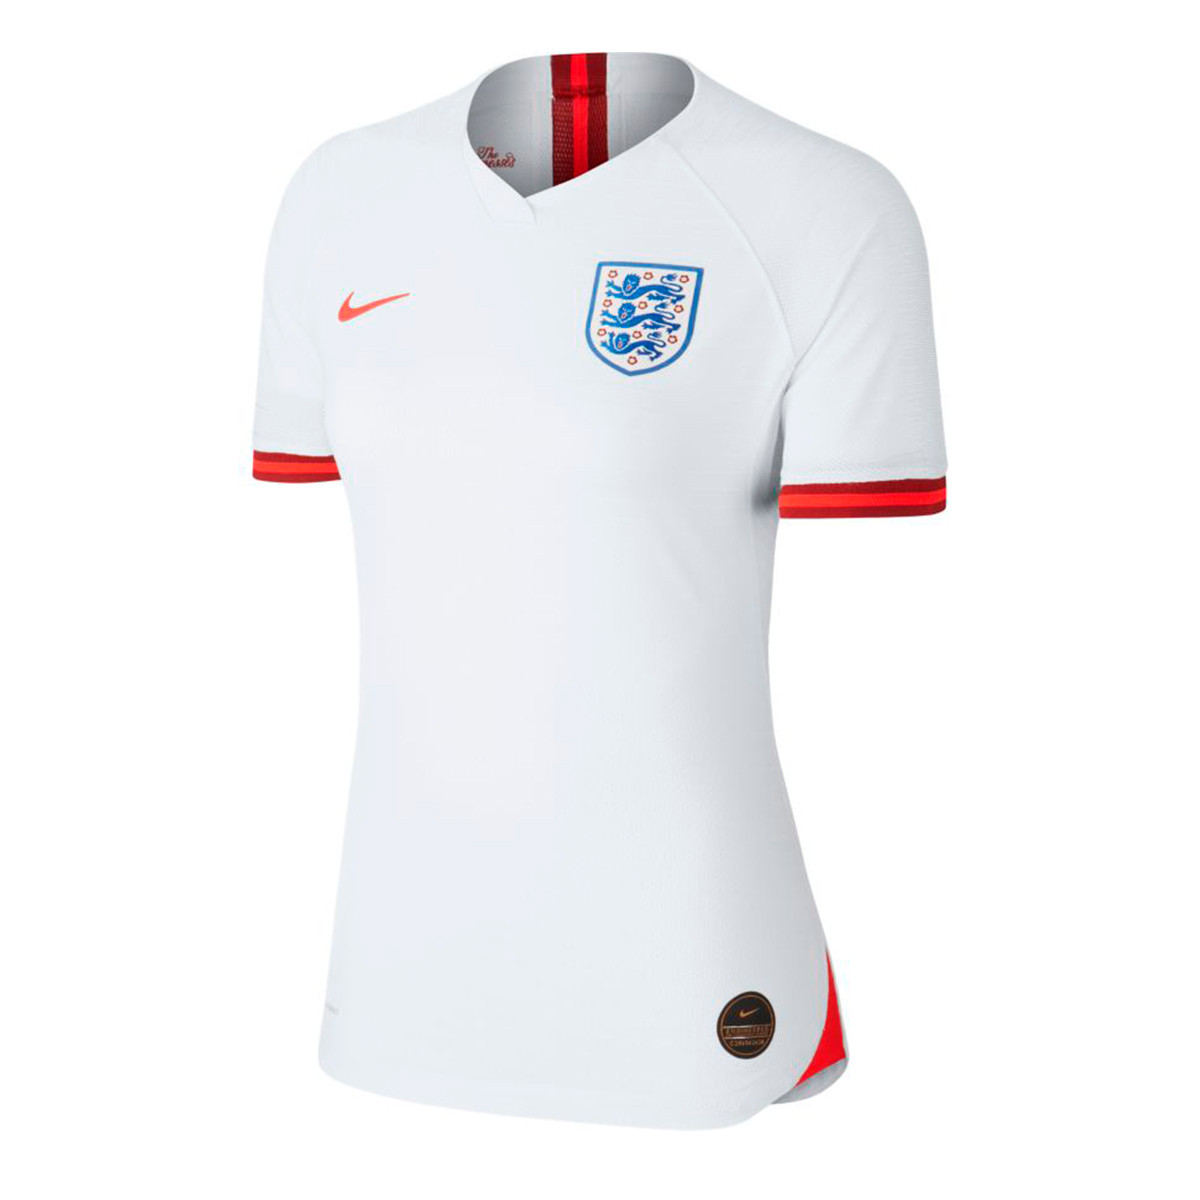 Camiseta Nike Seleccion Inglaterra Vapor Match SS Primera Equipación WWC 2019 Mujer White ...